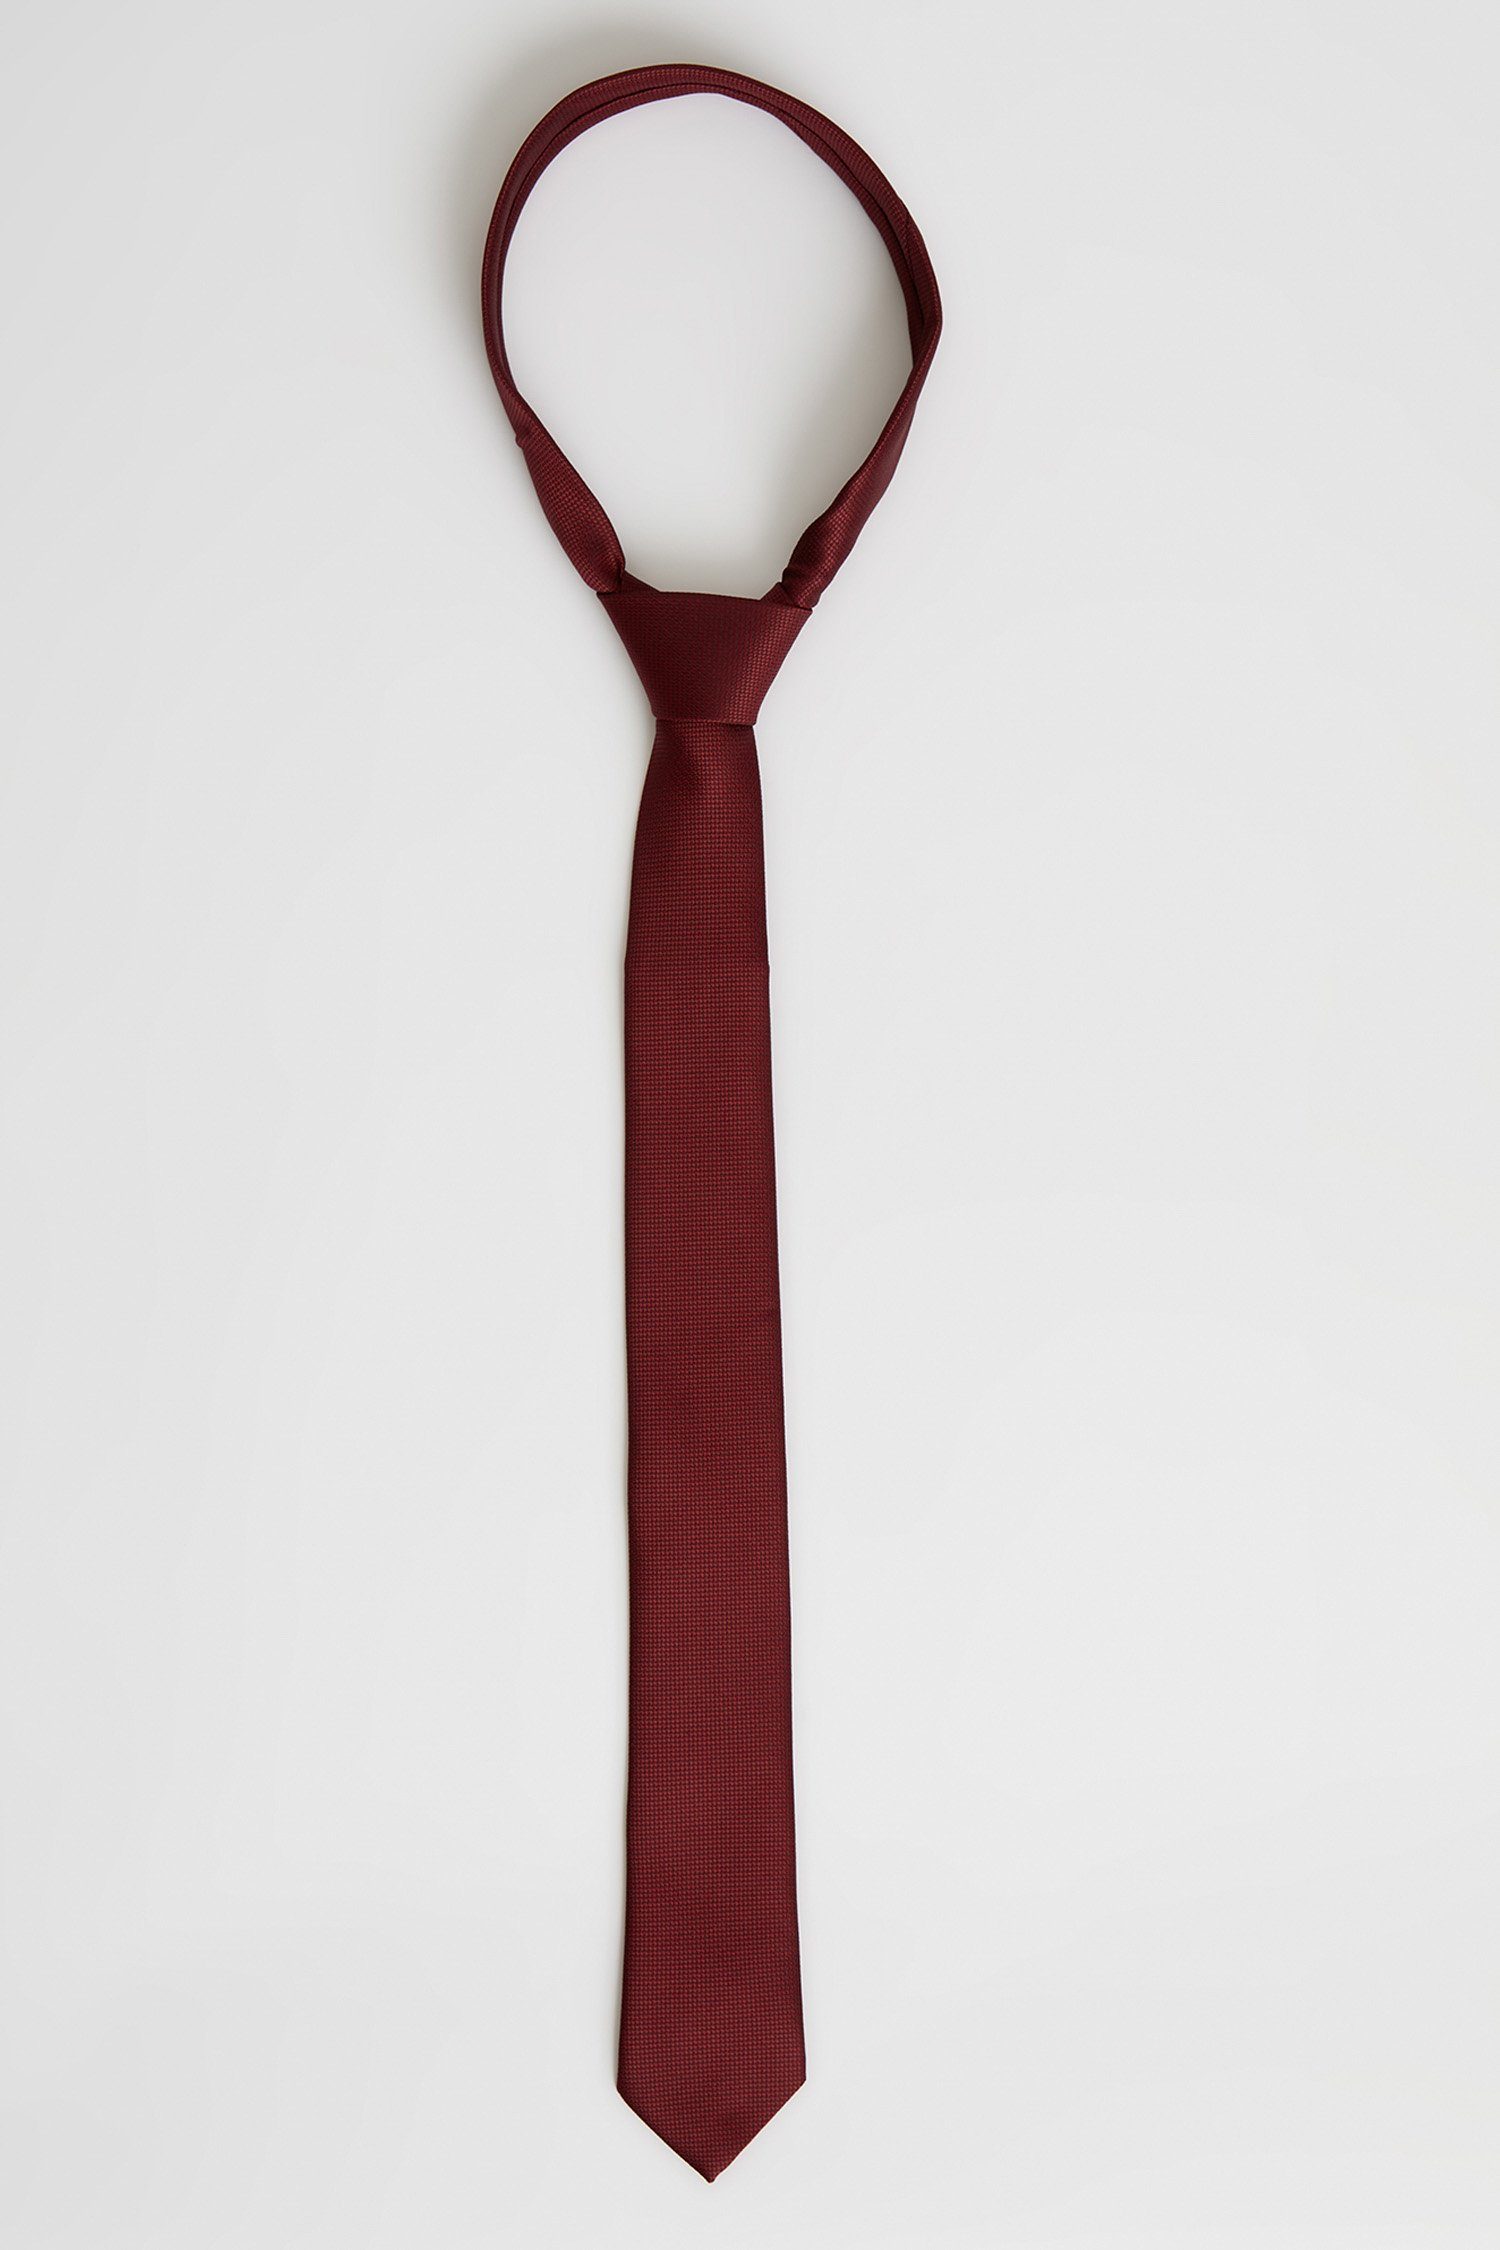 Rote Krawatte online kaufen | OTTO